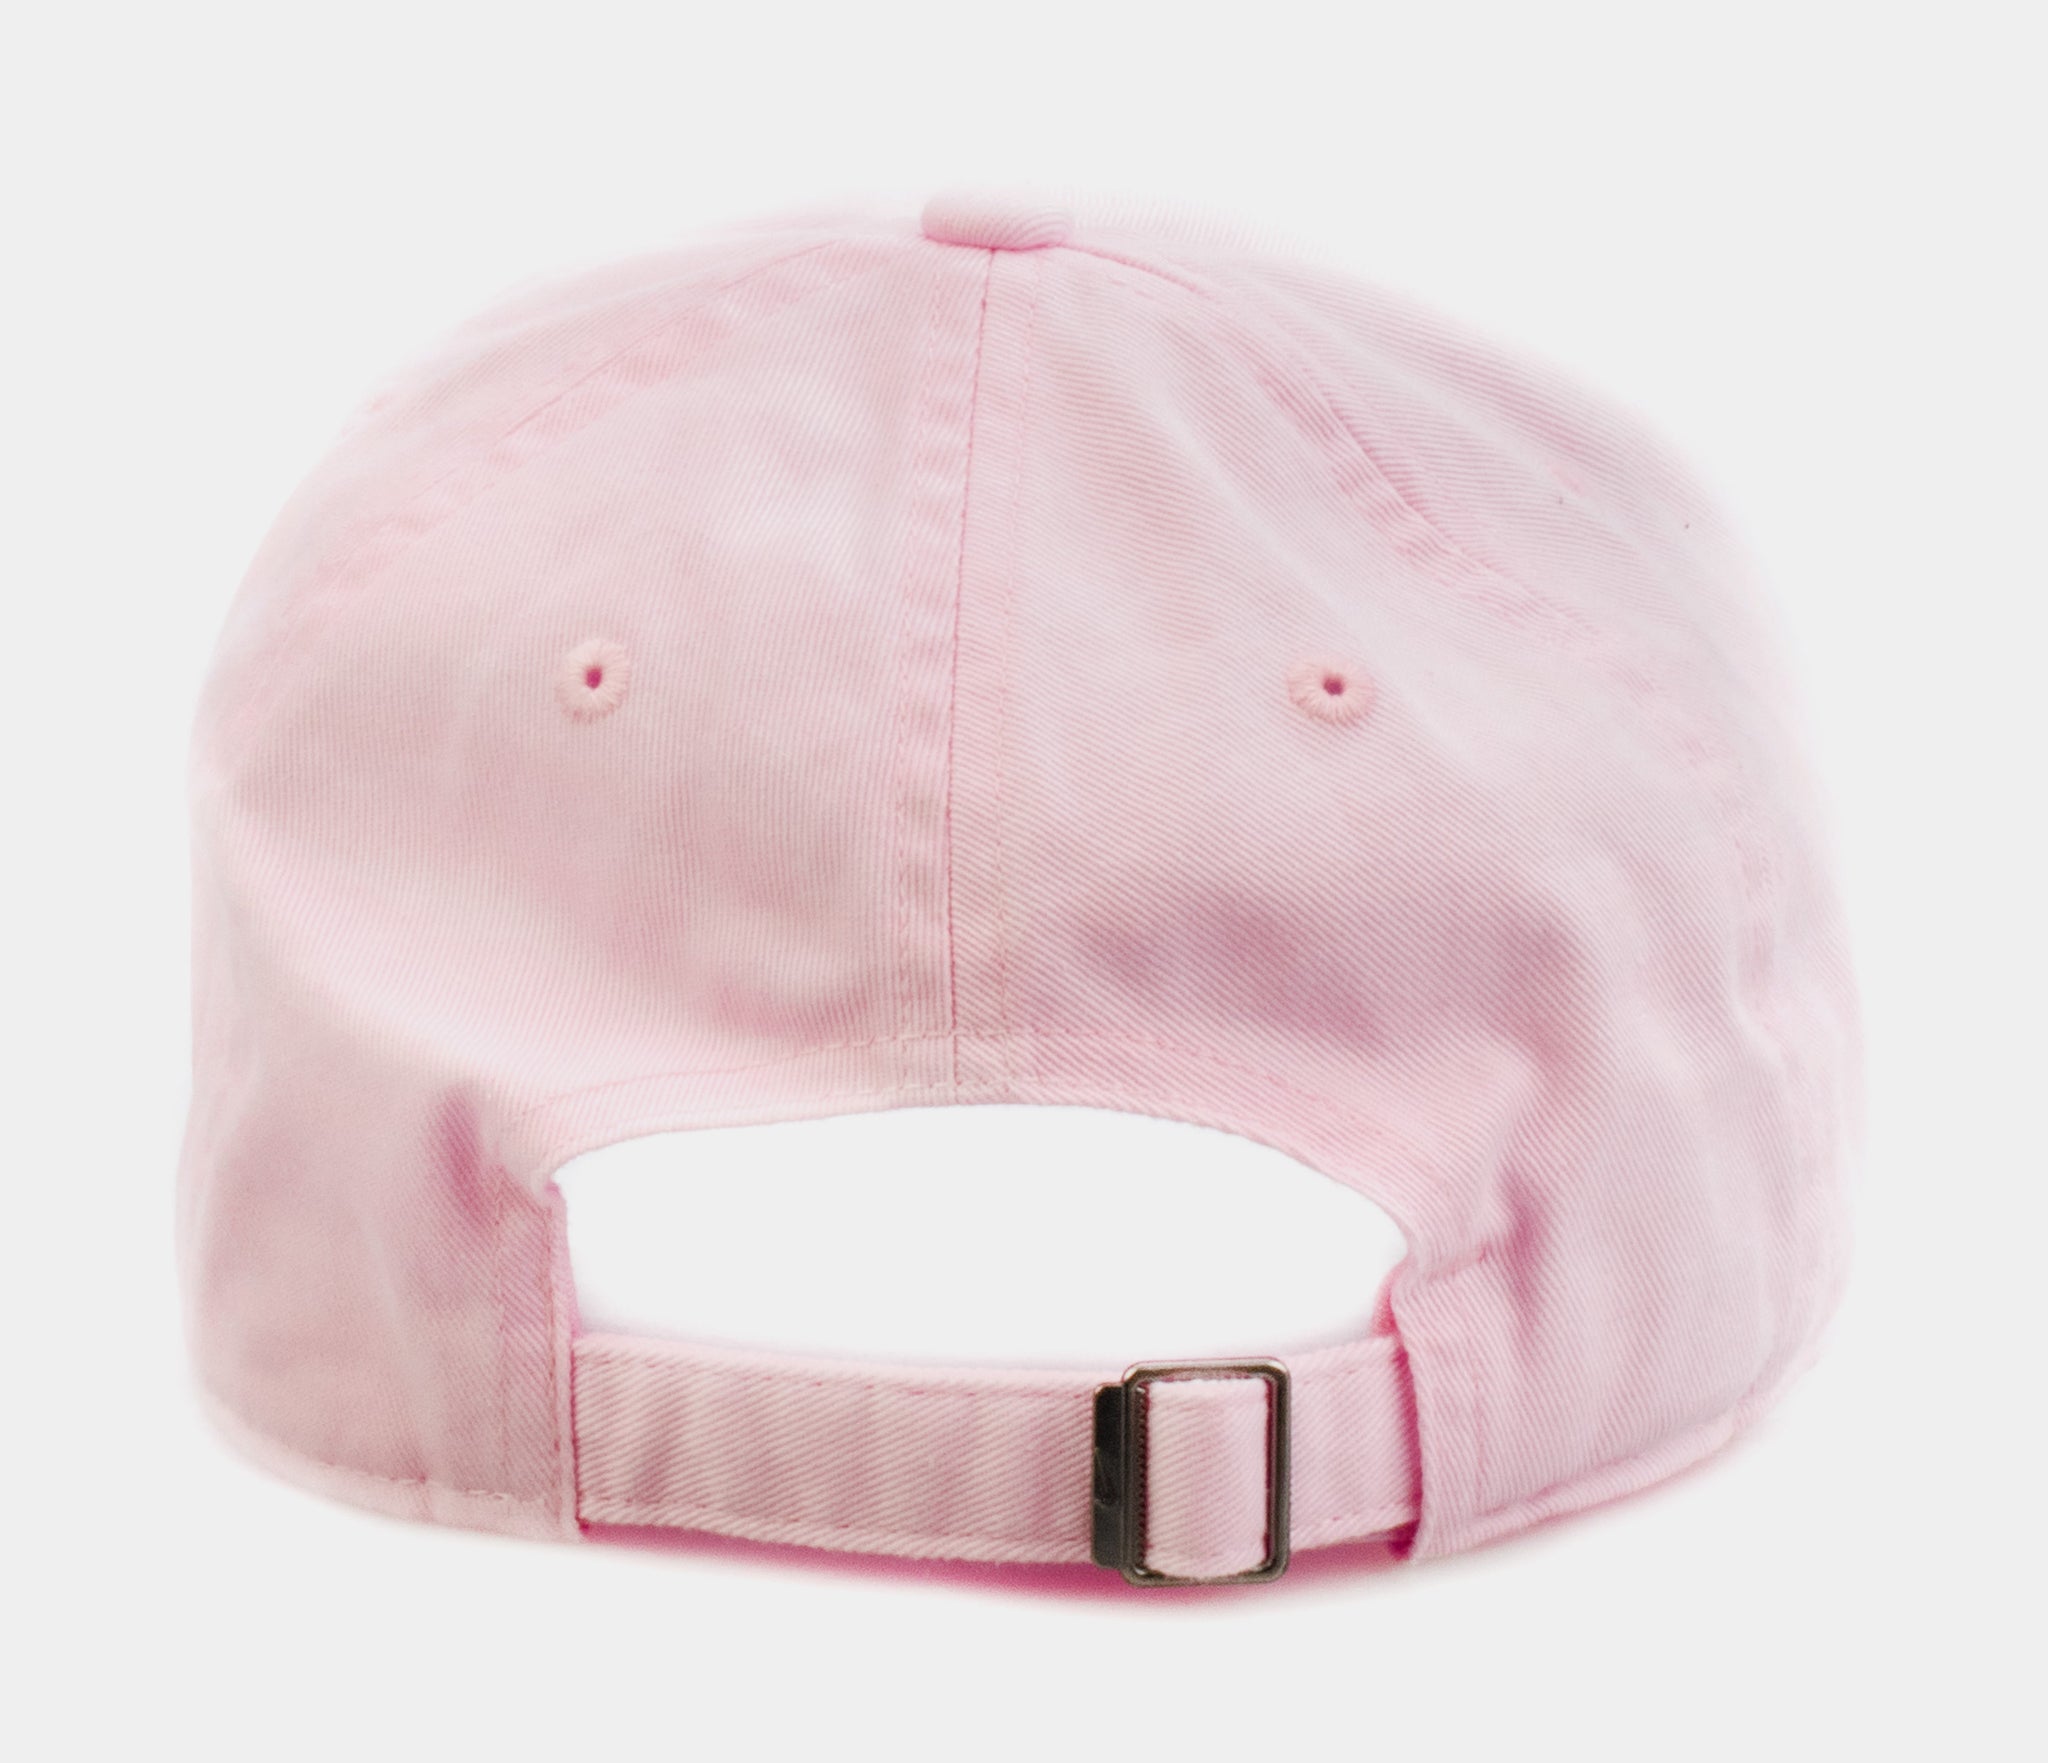 Nike H86 Futura cap in pink oxford